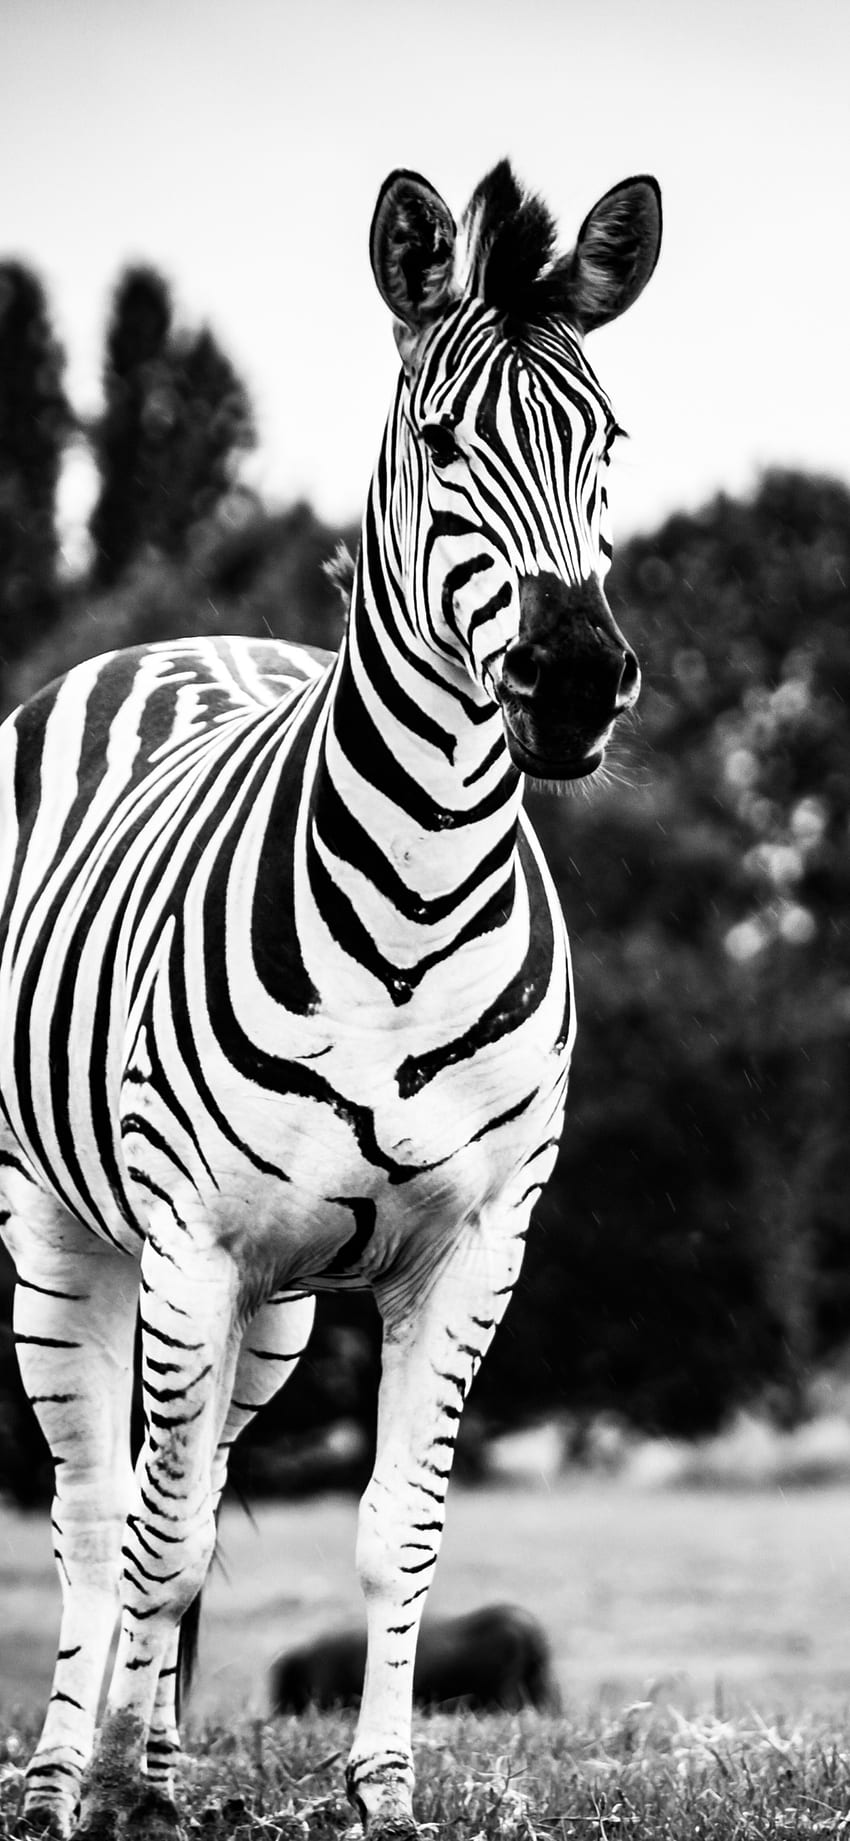 131089 Zebra Wallpaper Images Stock Photos  Vectors  Shutterstock